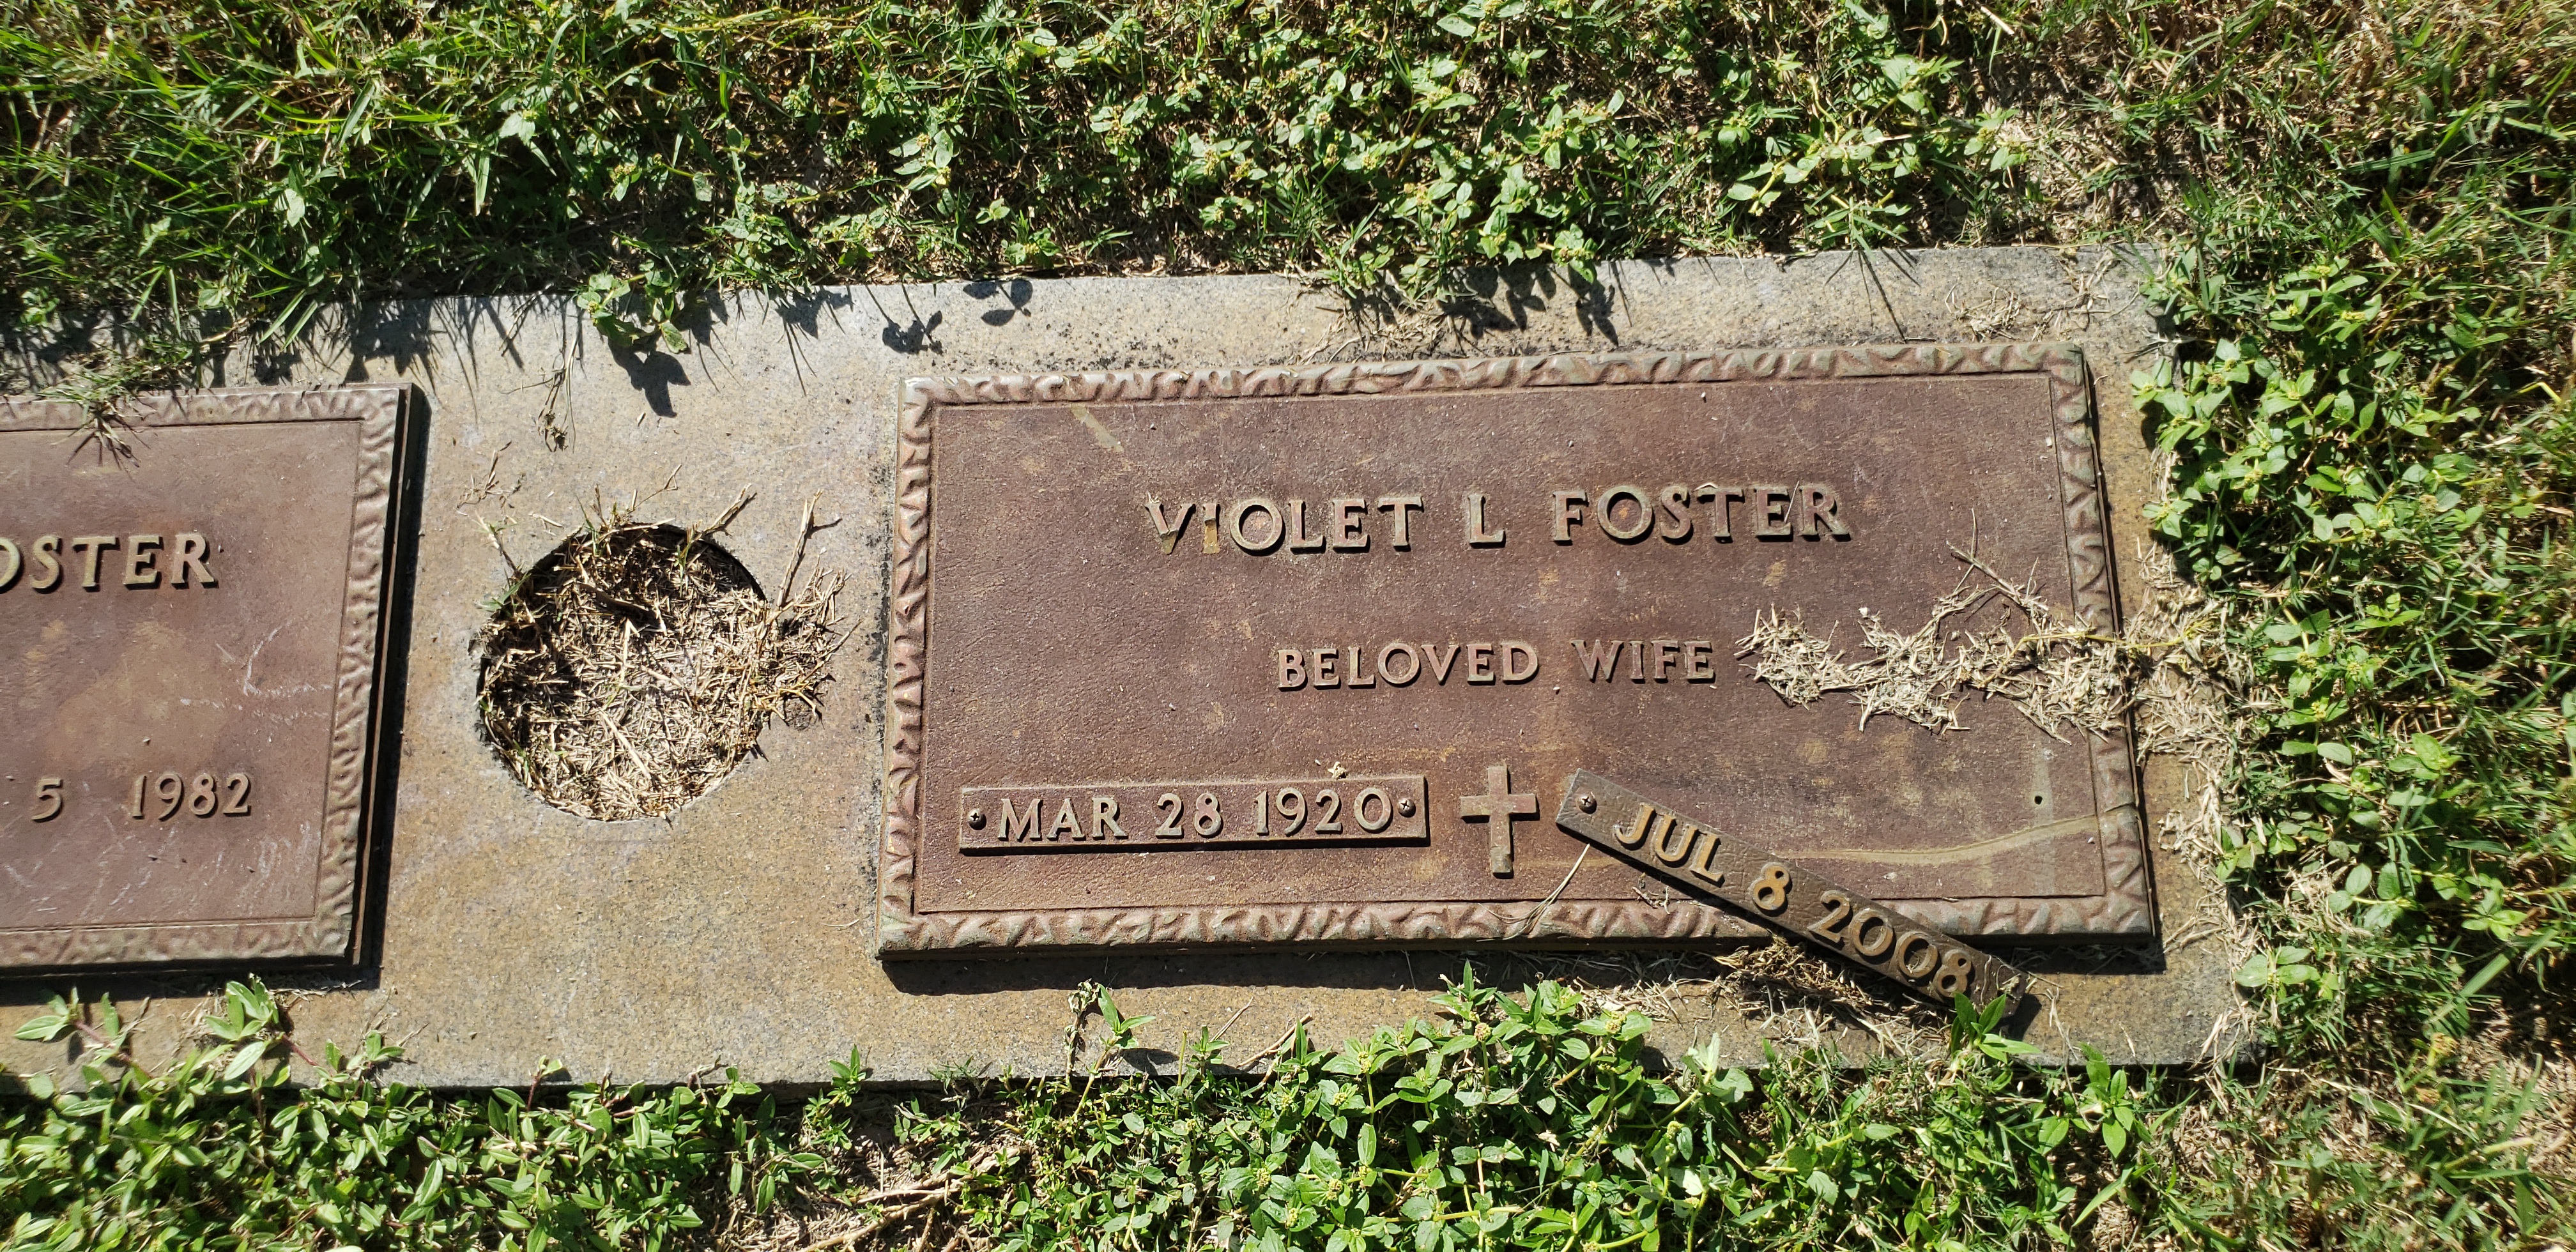 Violet L Foster